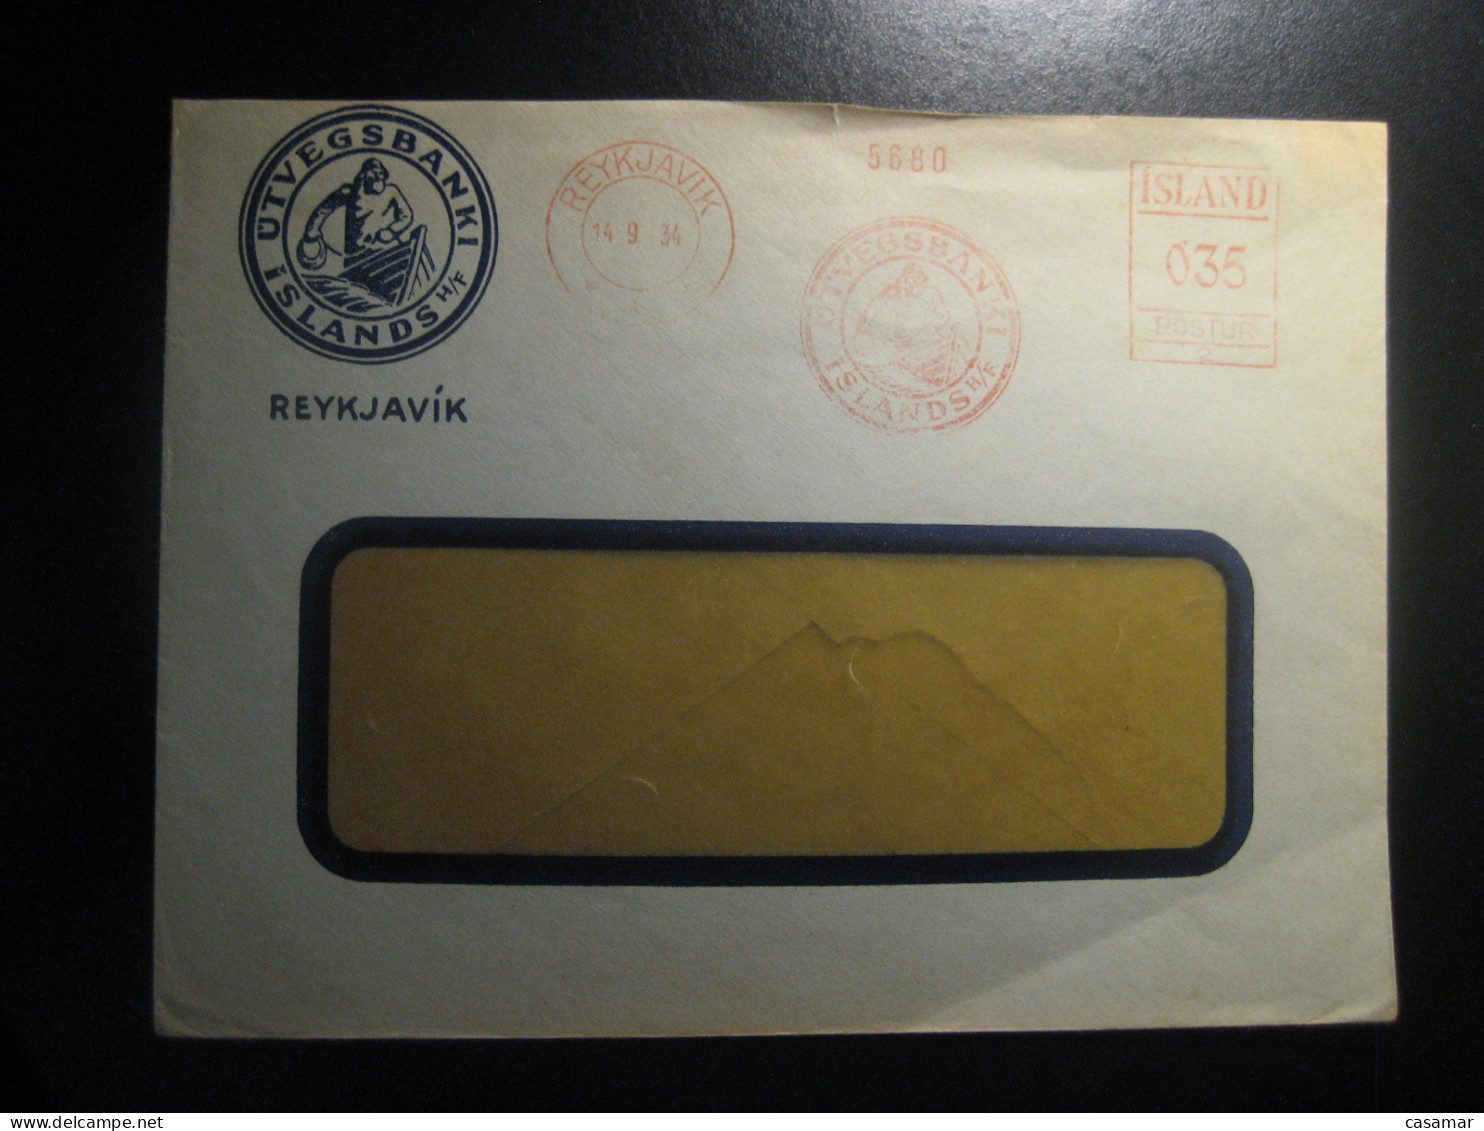 REYKJAVIK 1934 Utvegsbanki Islands H/F Meter Mail Cancel Cover ICELAND - Covers & Documents